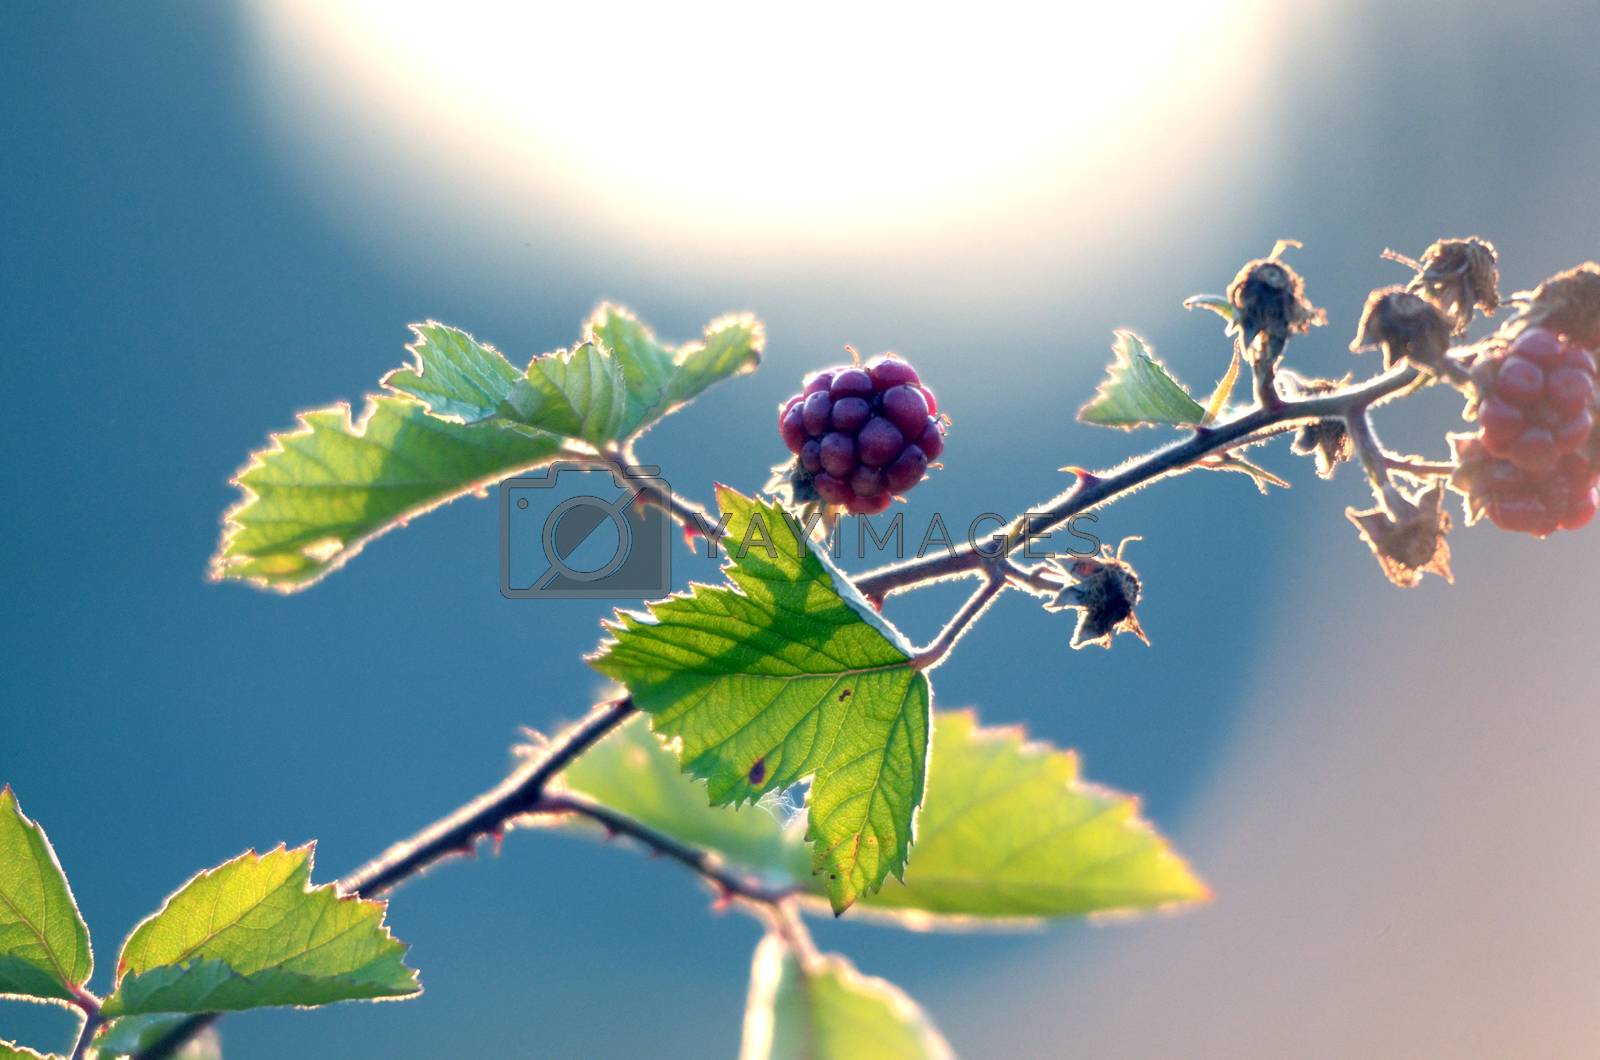 Royalty free image of Blackberries Growing on Bush by nehru